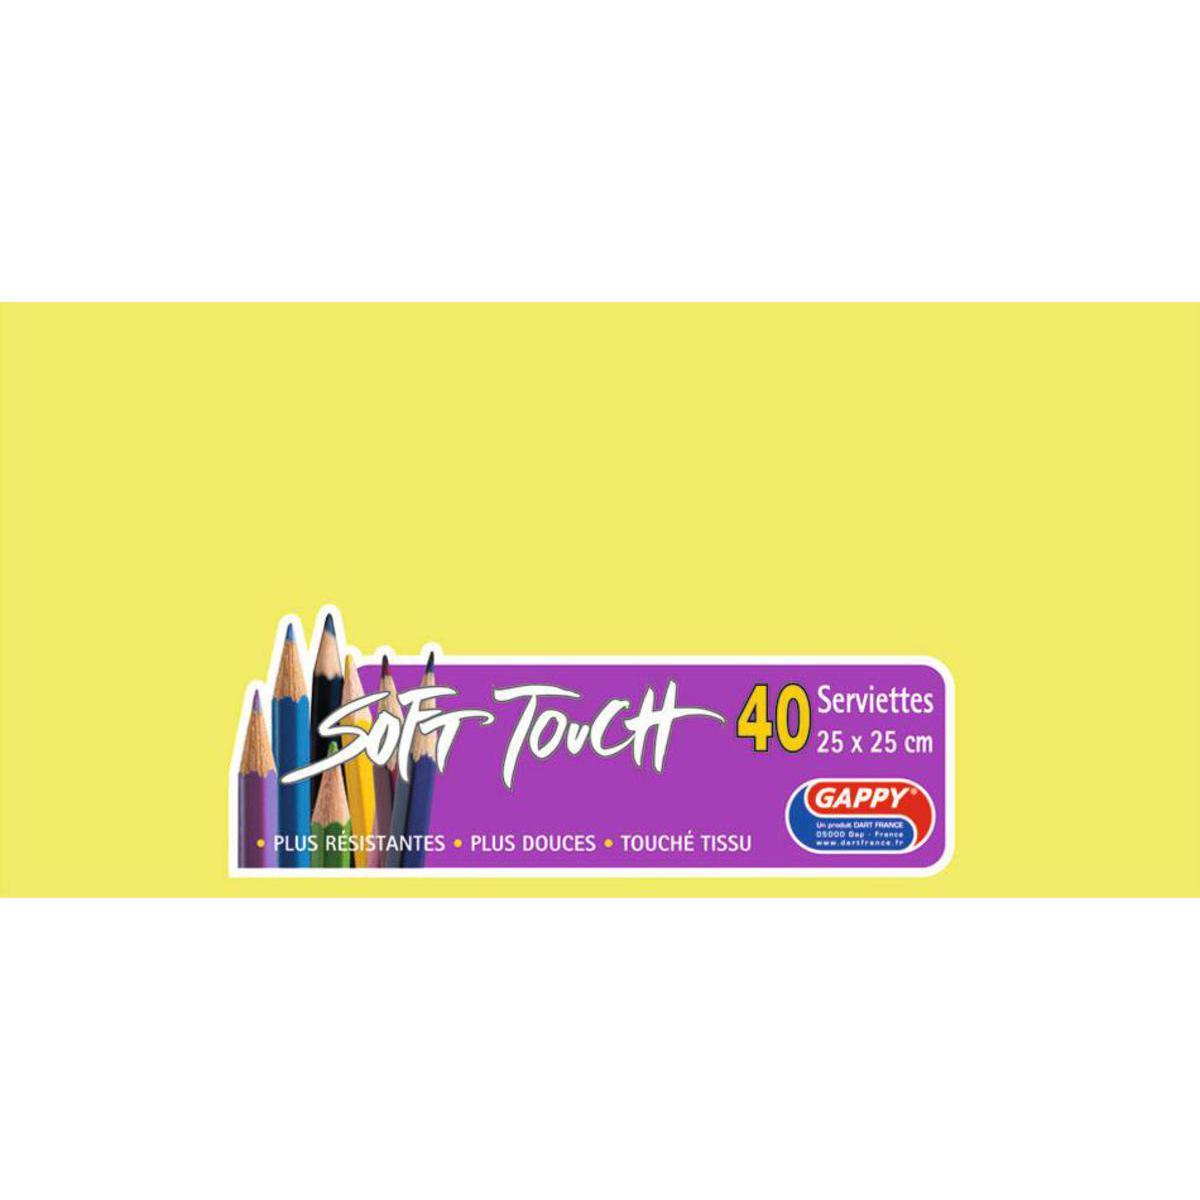 Lot de 40 serviettes papier Soft Touch Gappy - 25 x 25 cm - Pure Ouate de Cellulose - Vert